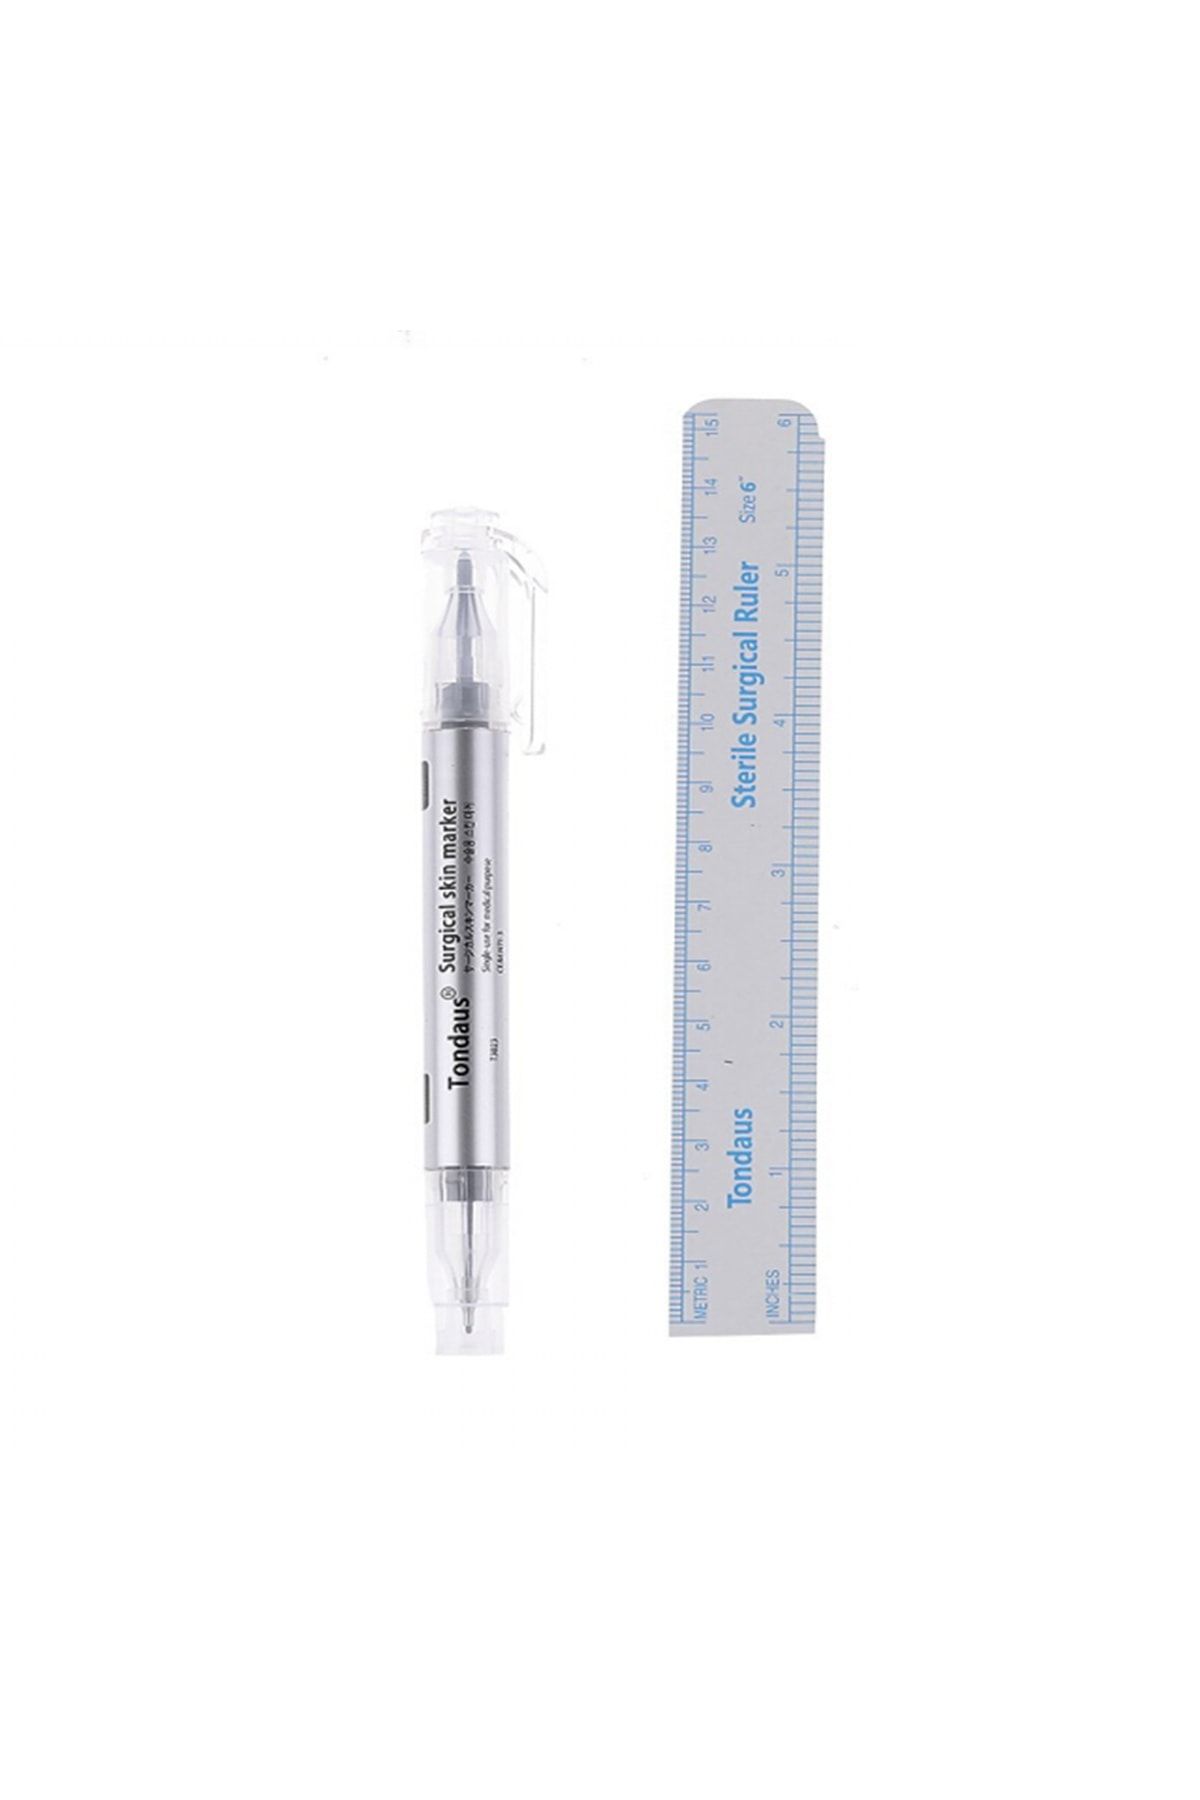 YMR Microblading Kalıcı Makyaj Kaş Ölçüm Ve Işaretleme Kalemi